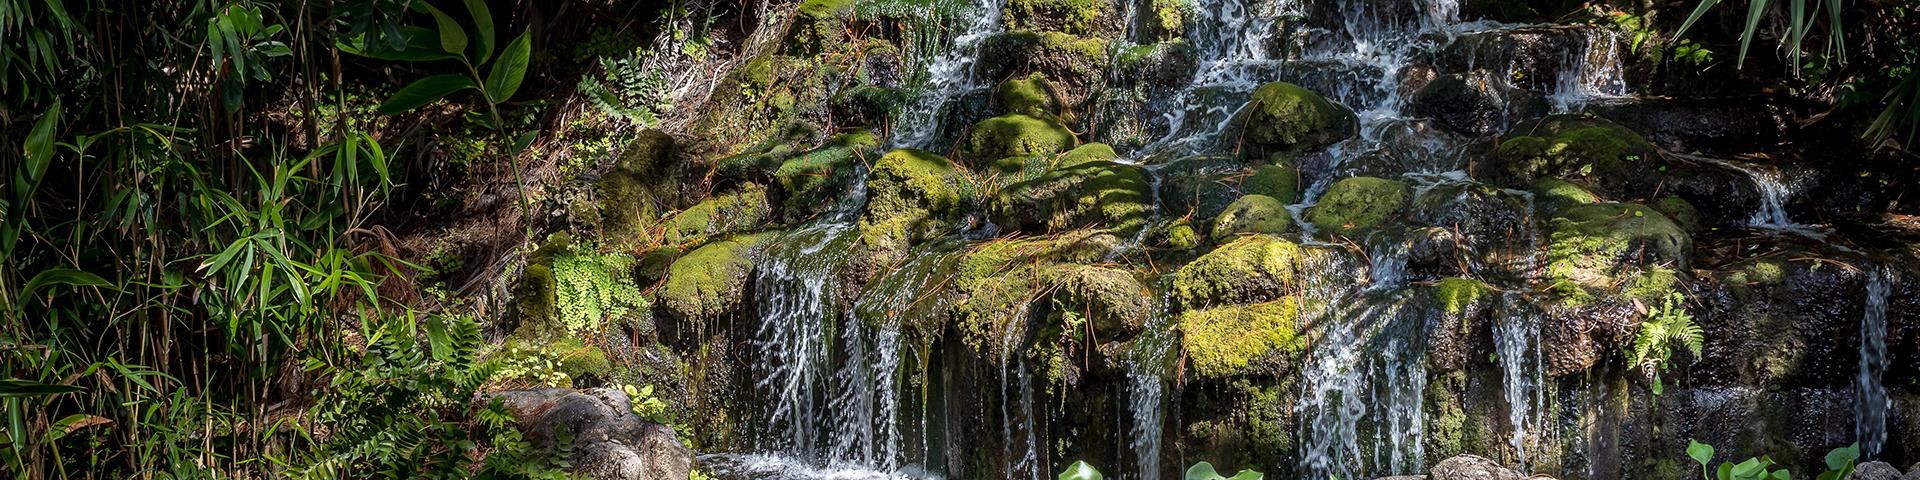 Wasserfall im Dschungel und vielen grünen Pflanzen